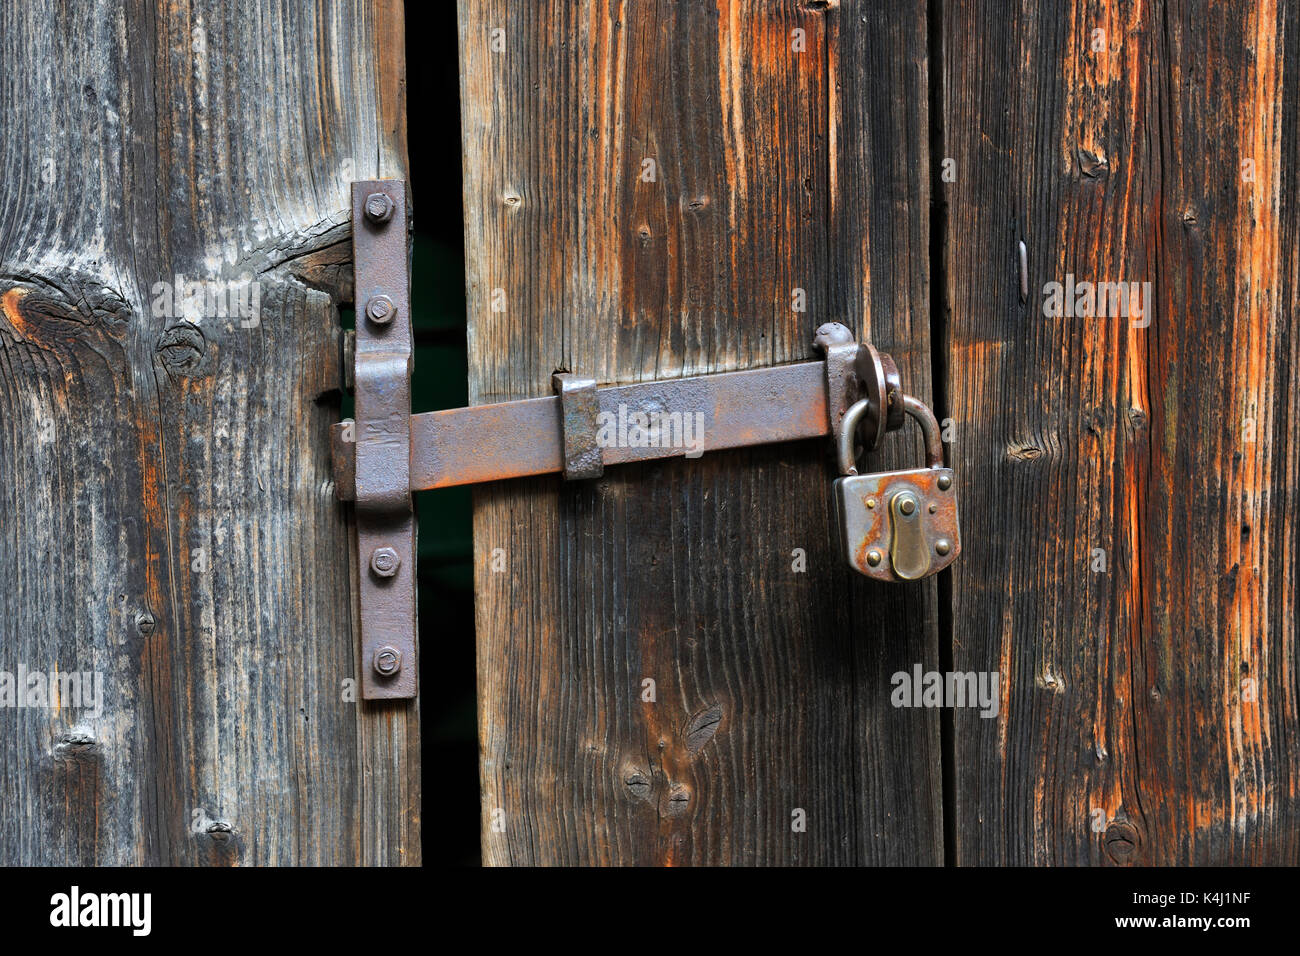 Tirador oxidado de la puerta con cerradura en la puerta de madera vieja, Baden-Württemberg, Alemania Foto de stock